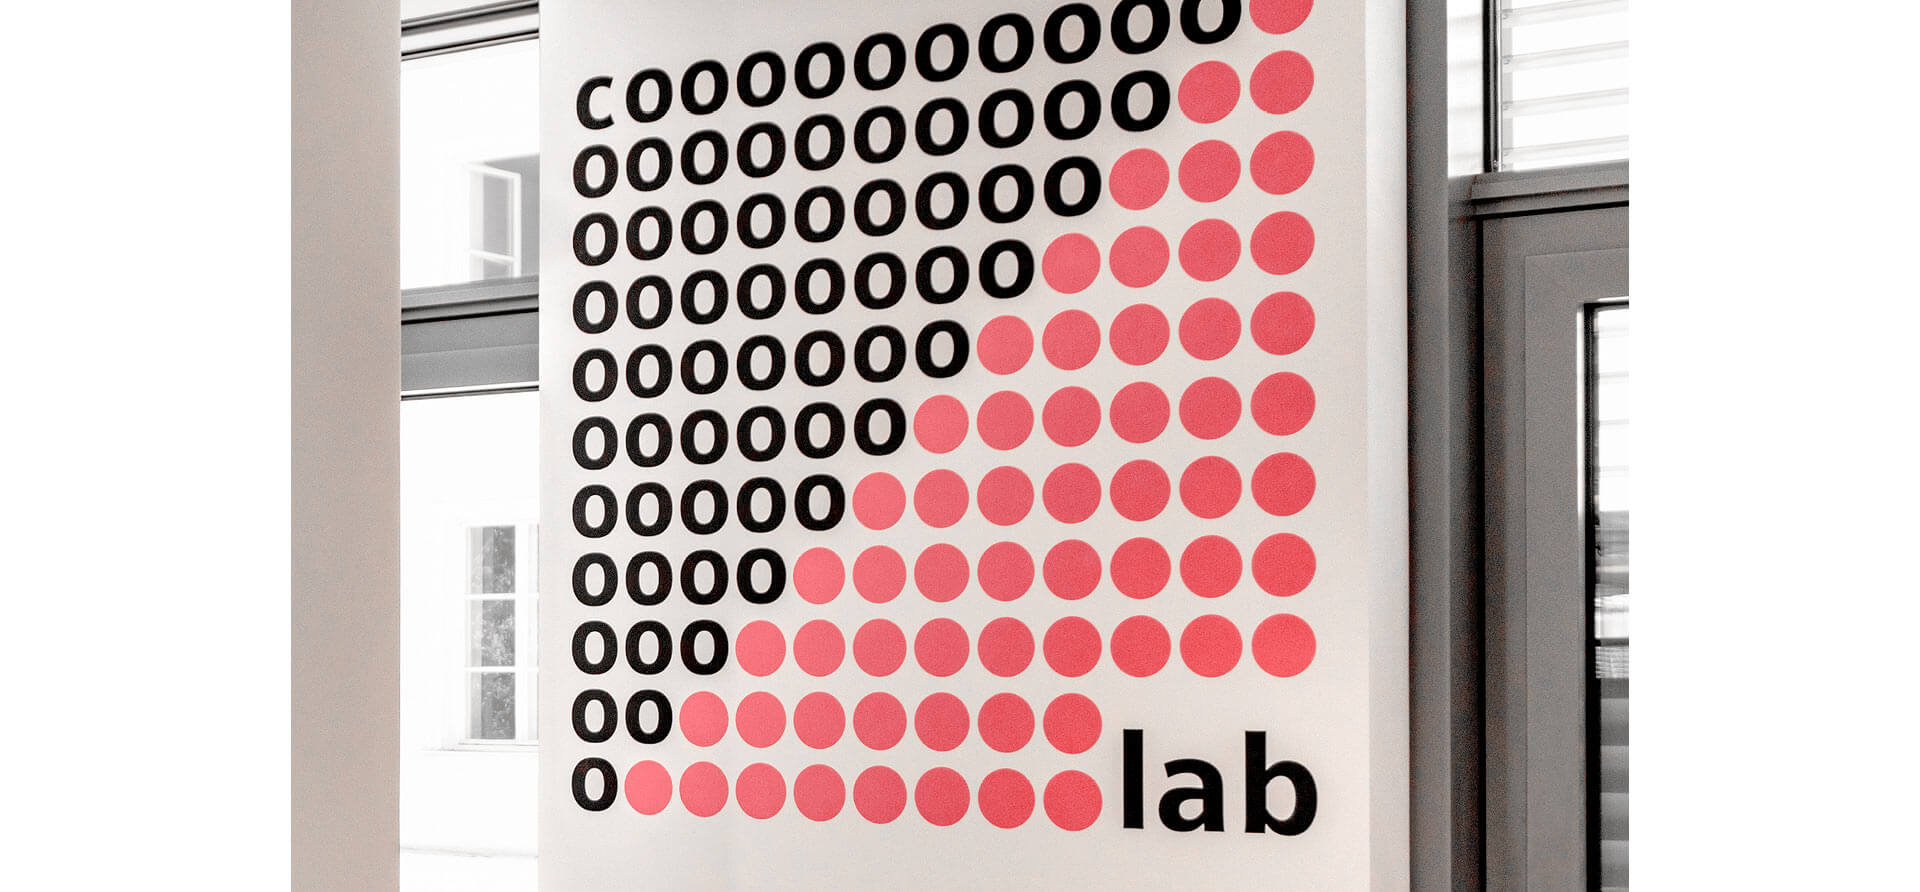 Raumgestaltungselement, auf dem das Wort co.lab dekorativ mit mehreren rosaroten Punkten und schwarzer Schrift auf weißem Hintergrund dargestellt wird. Im Hintergrund sieht man eine Fensterfront.